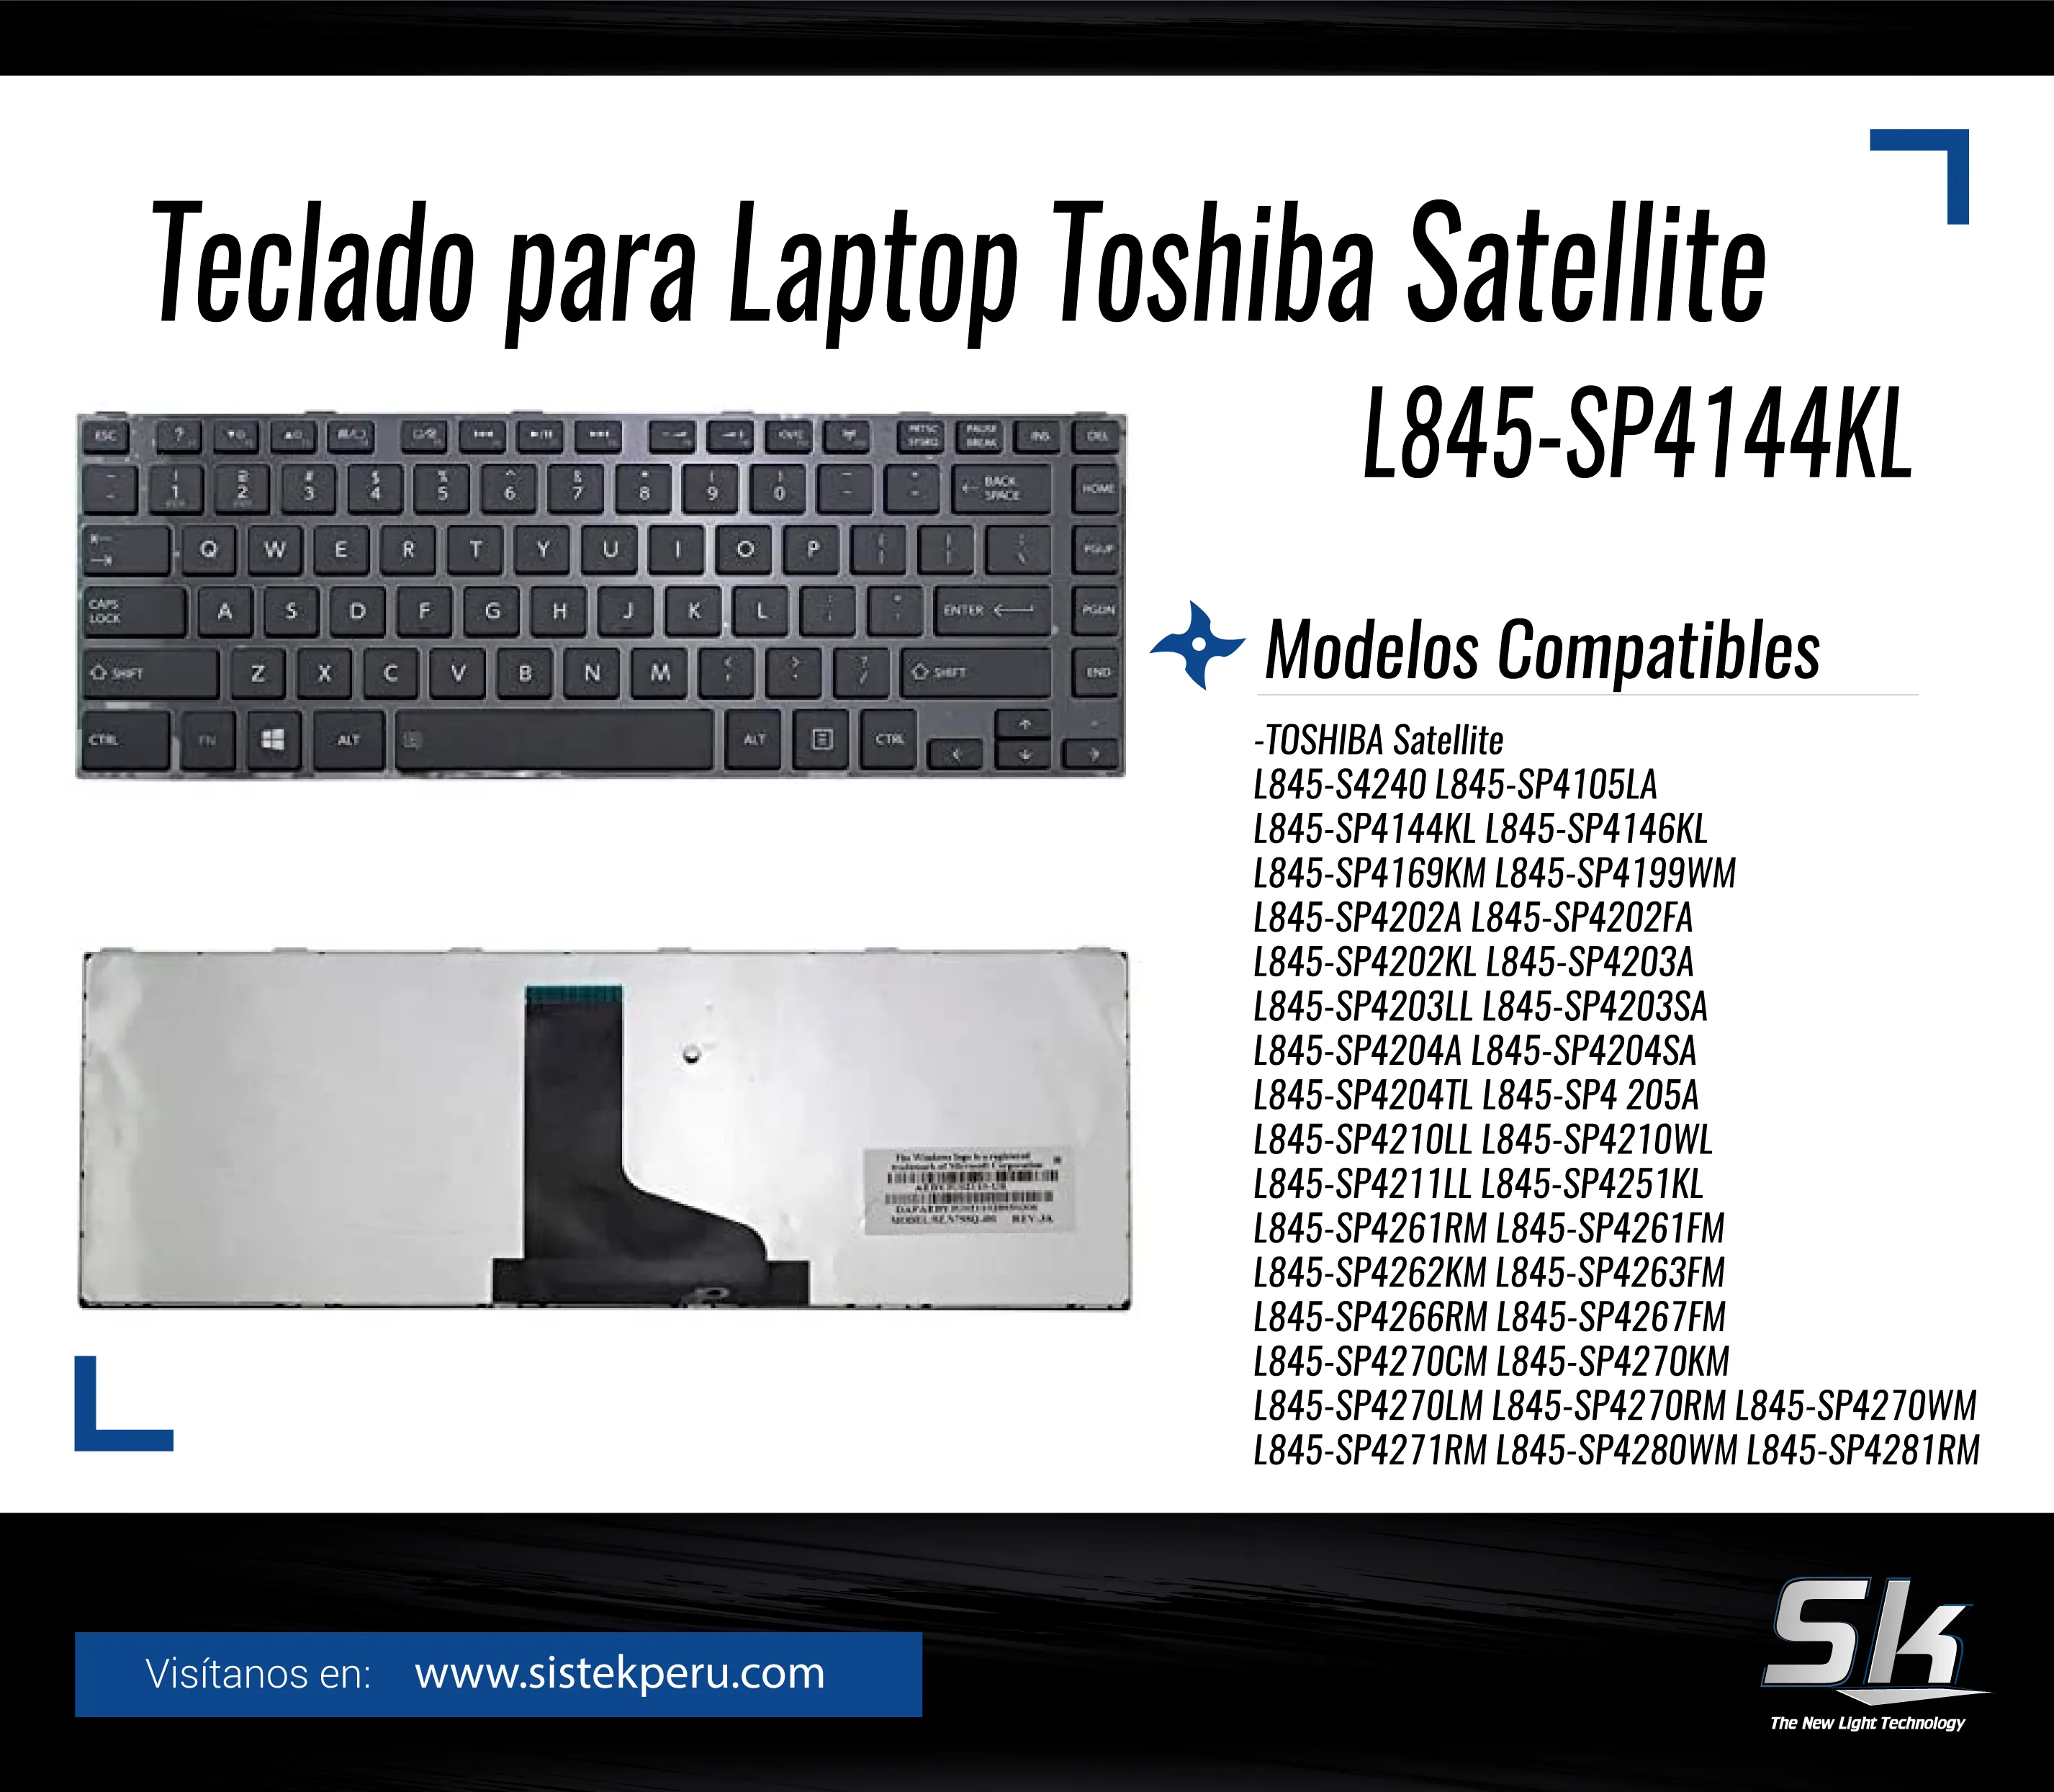 Teclado Laptop Toshiba Satellite L845-SP4144KL